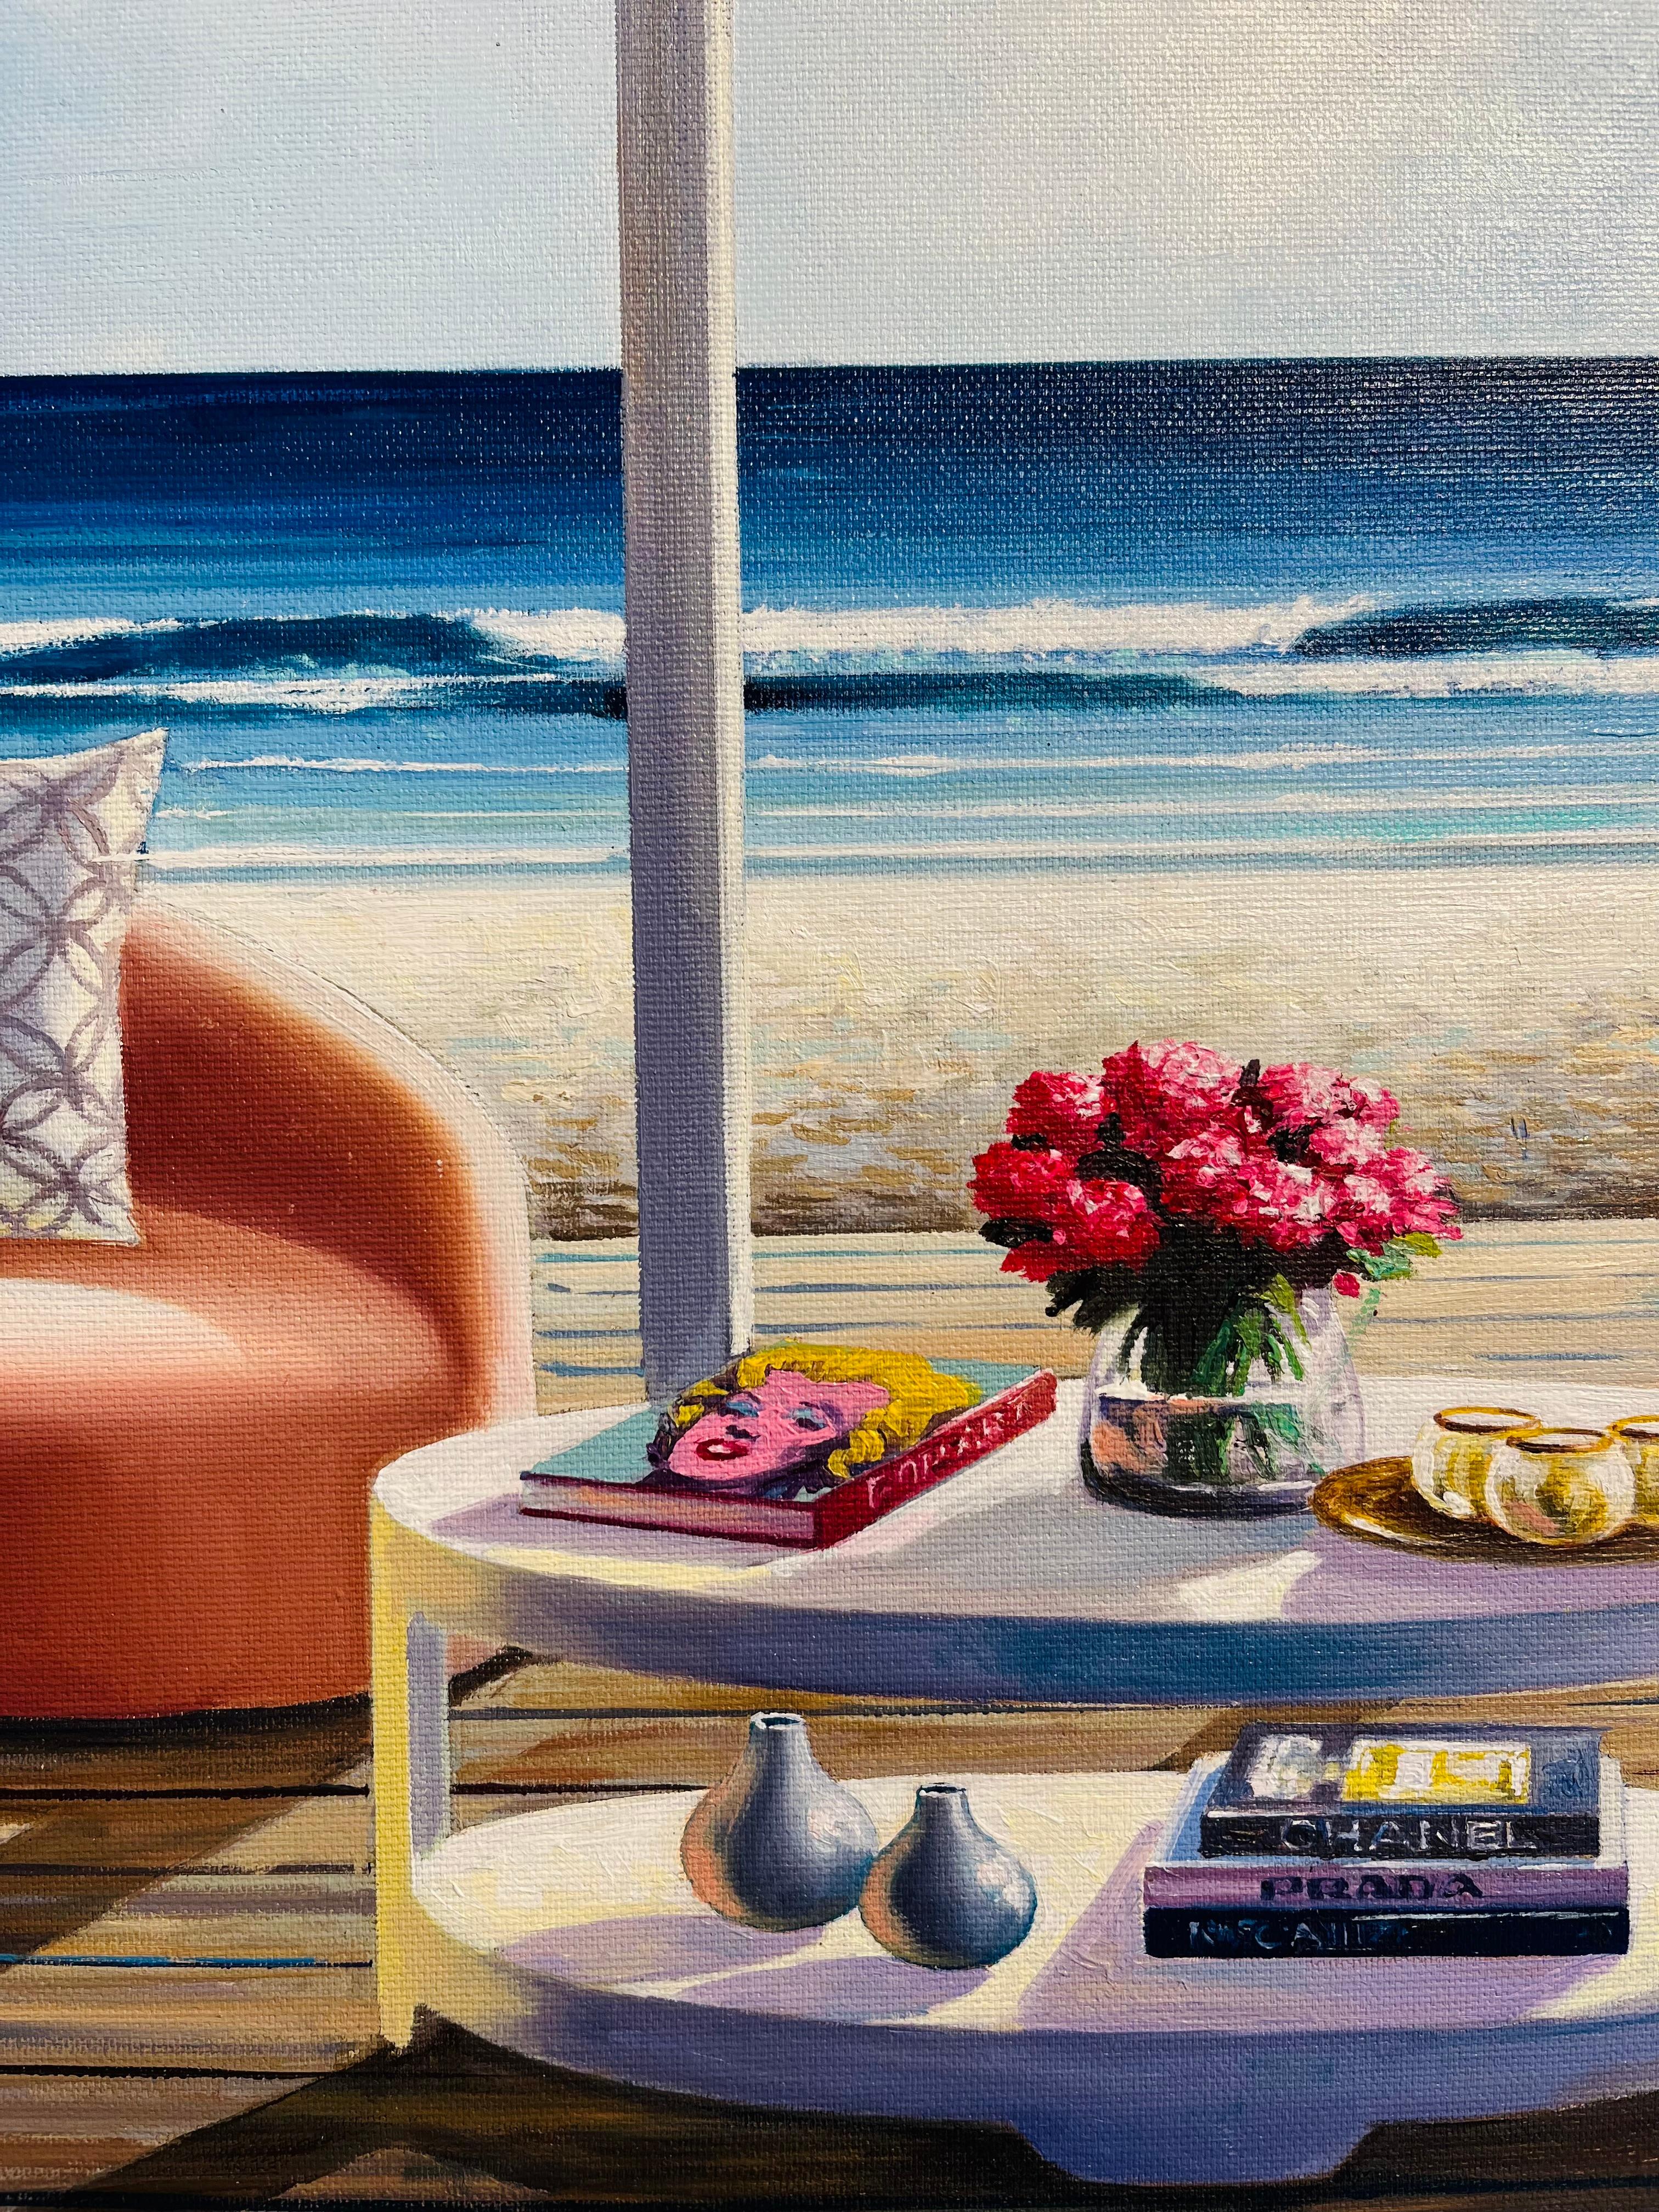 Bücher und Blumen- Originales surreales Stillleben- Innen-Seascape Ölgemälde-Kunst – Painting von Luis Fuentes